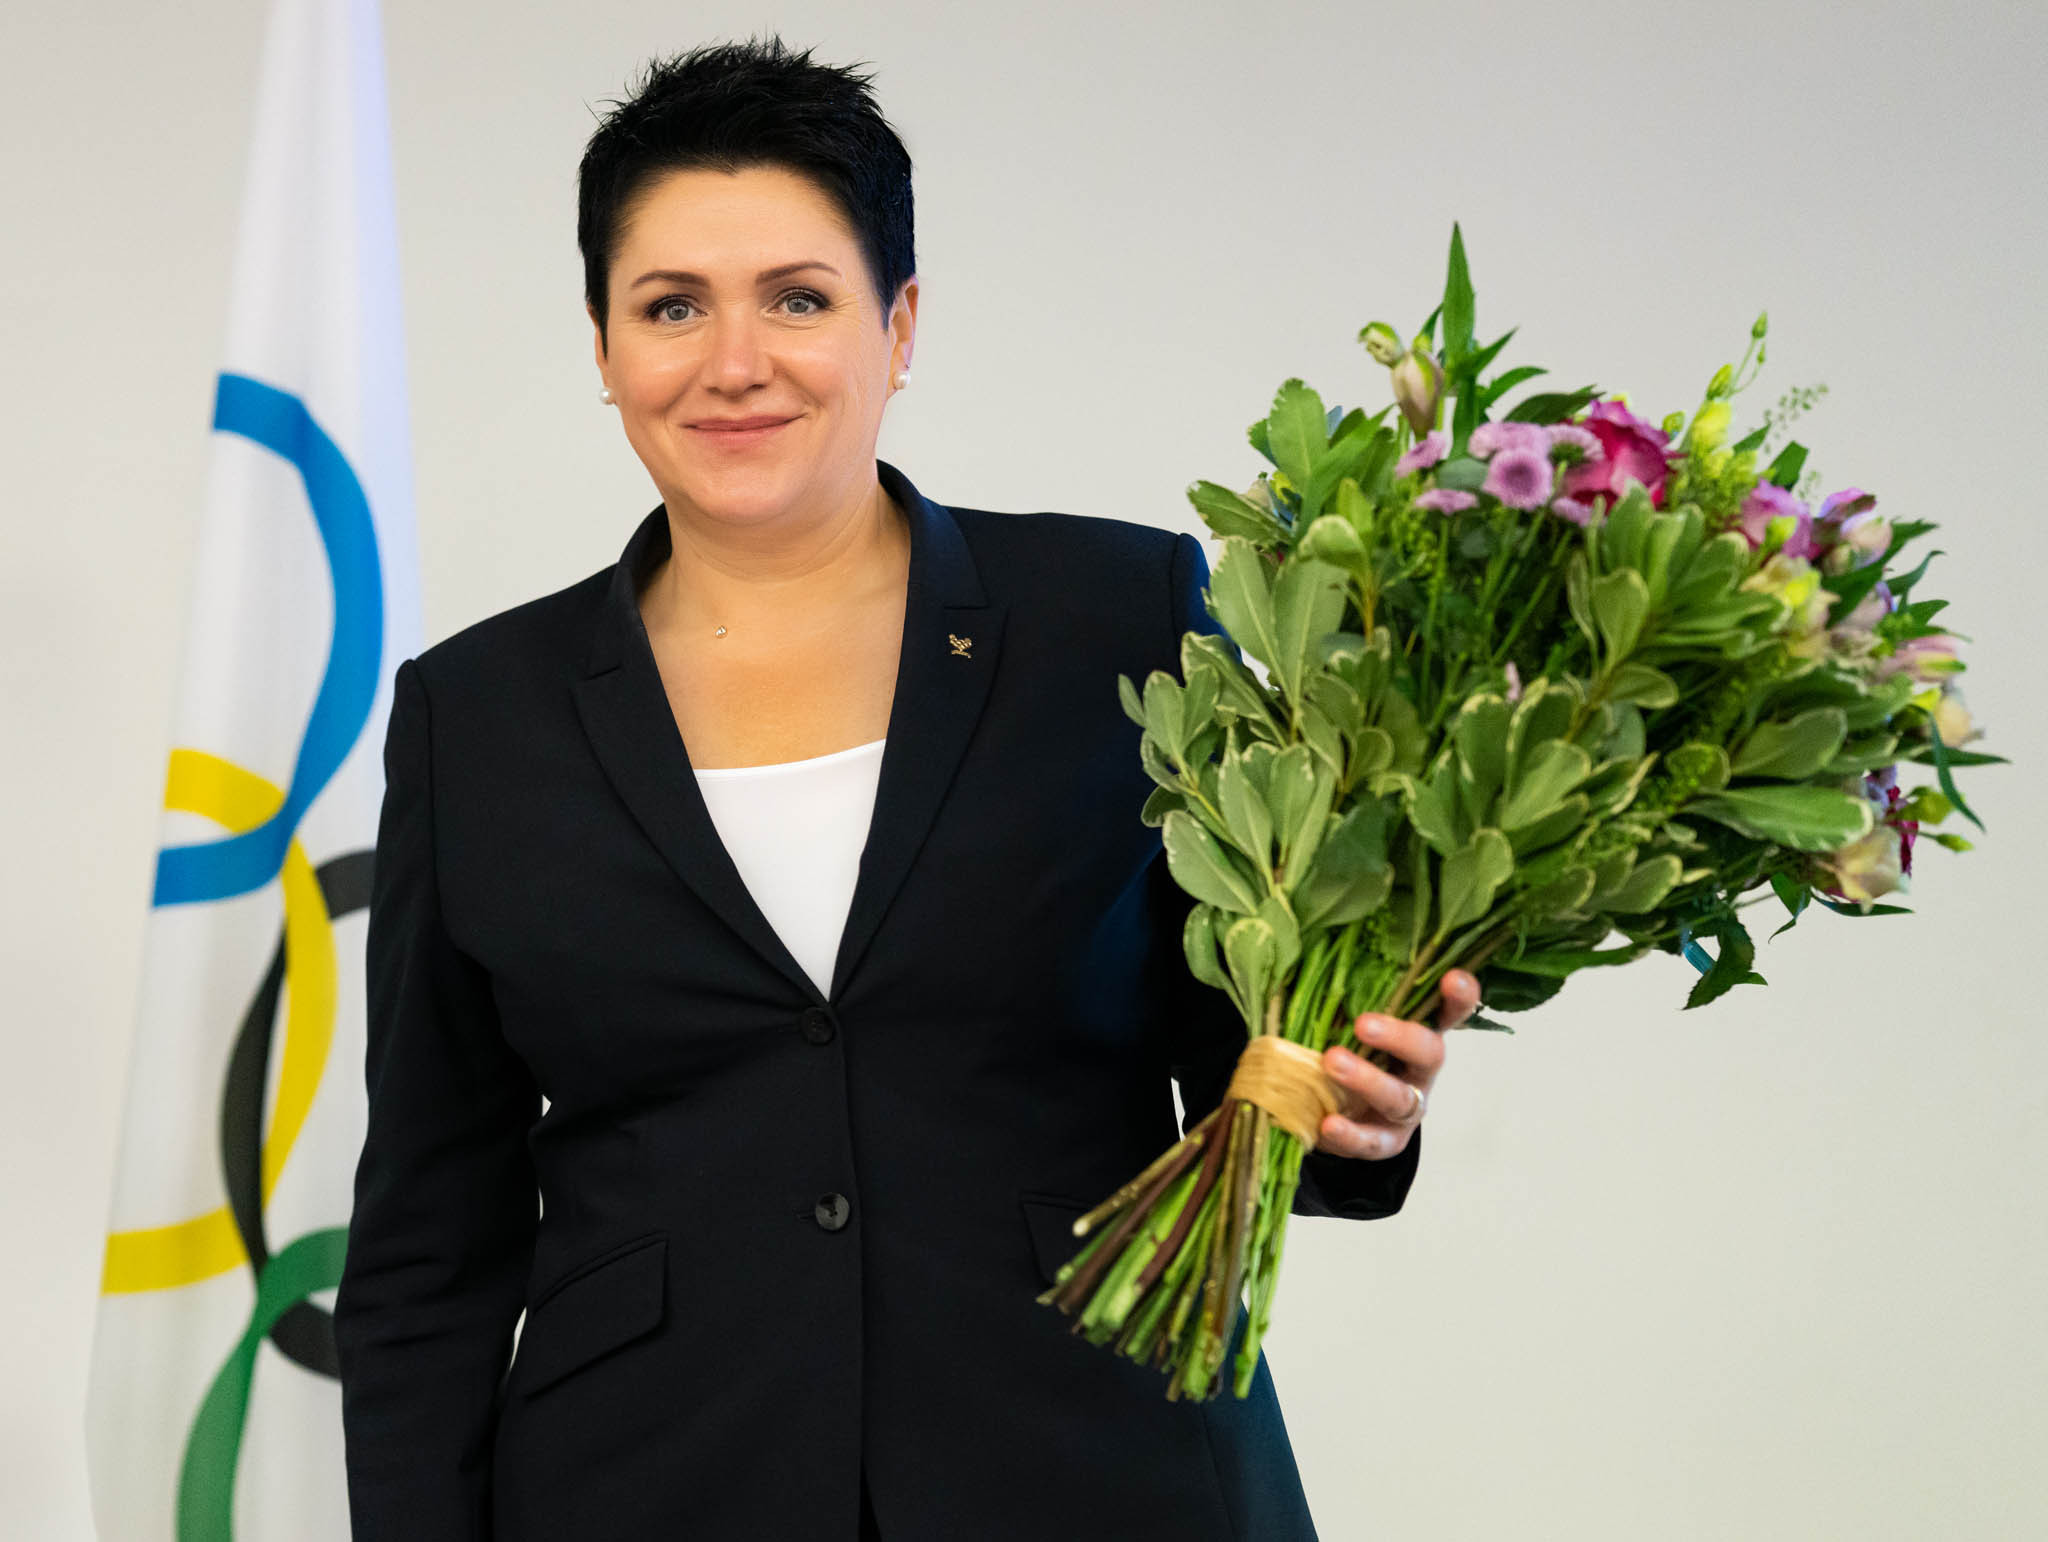 Gudzineviiūtė laimi trečią kadenciją kaip Lietuvos olimpinio komiteto prezidentė